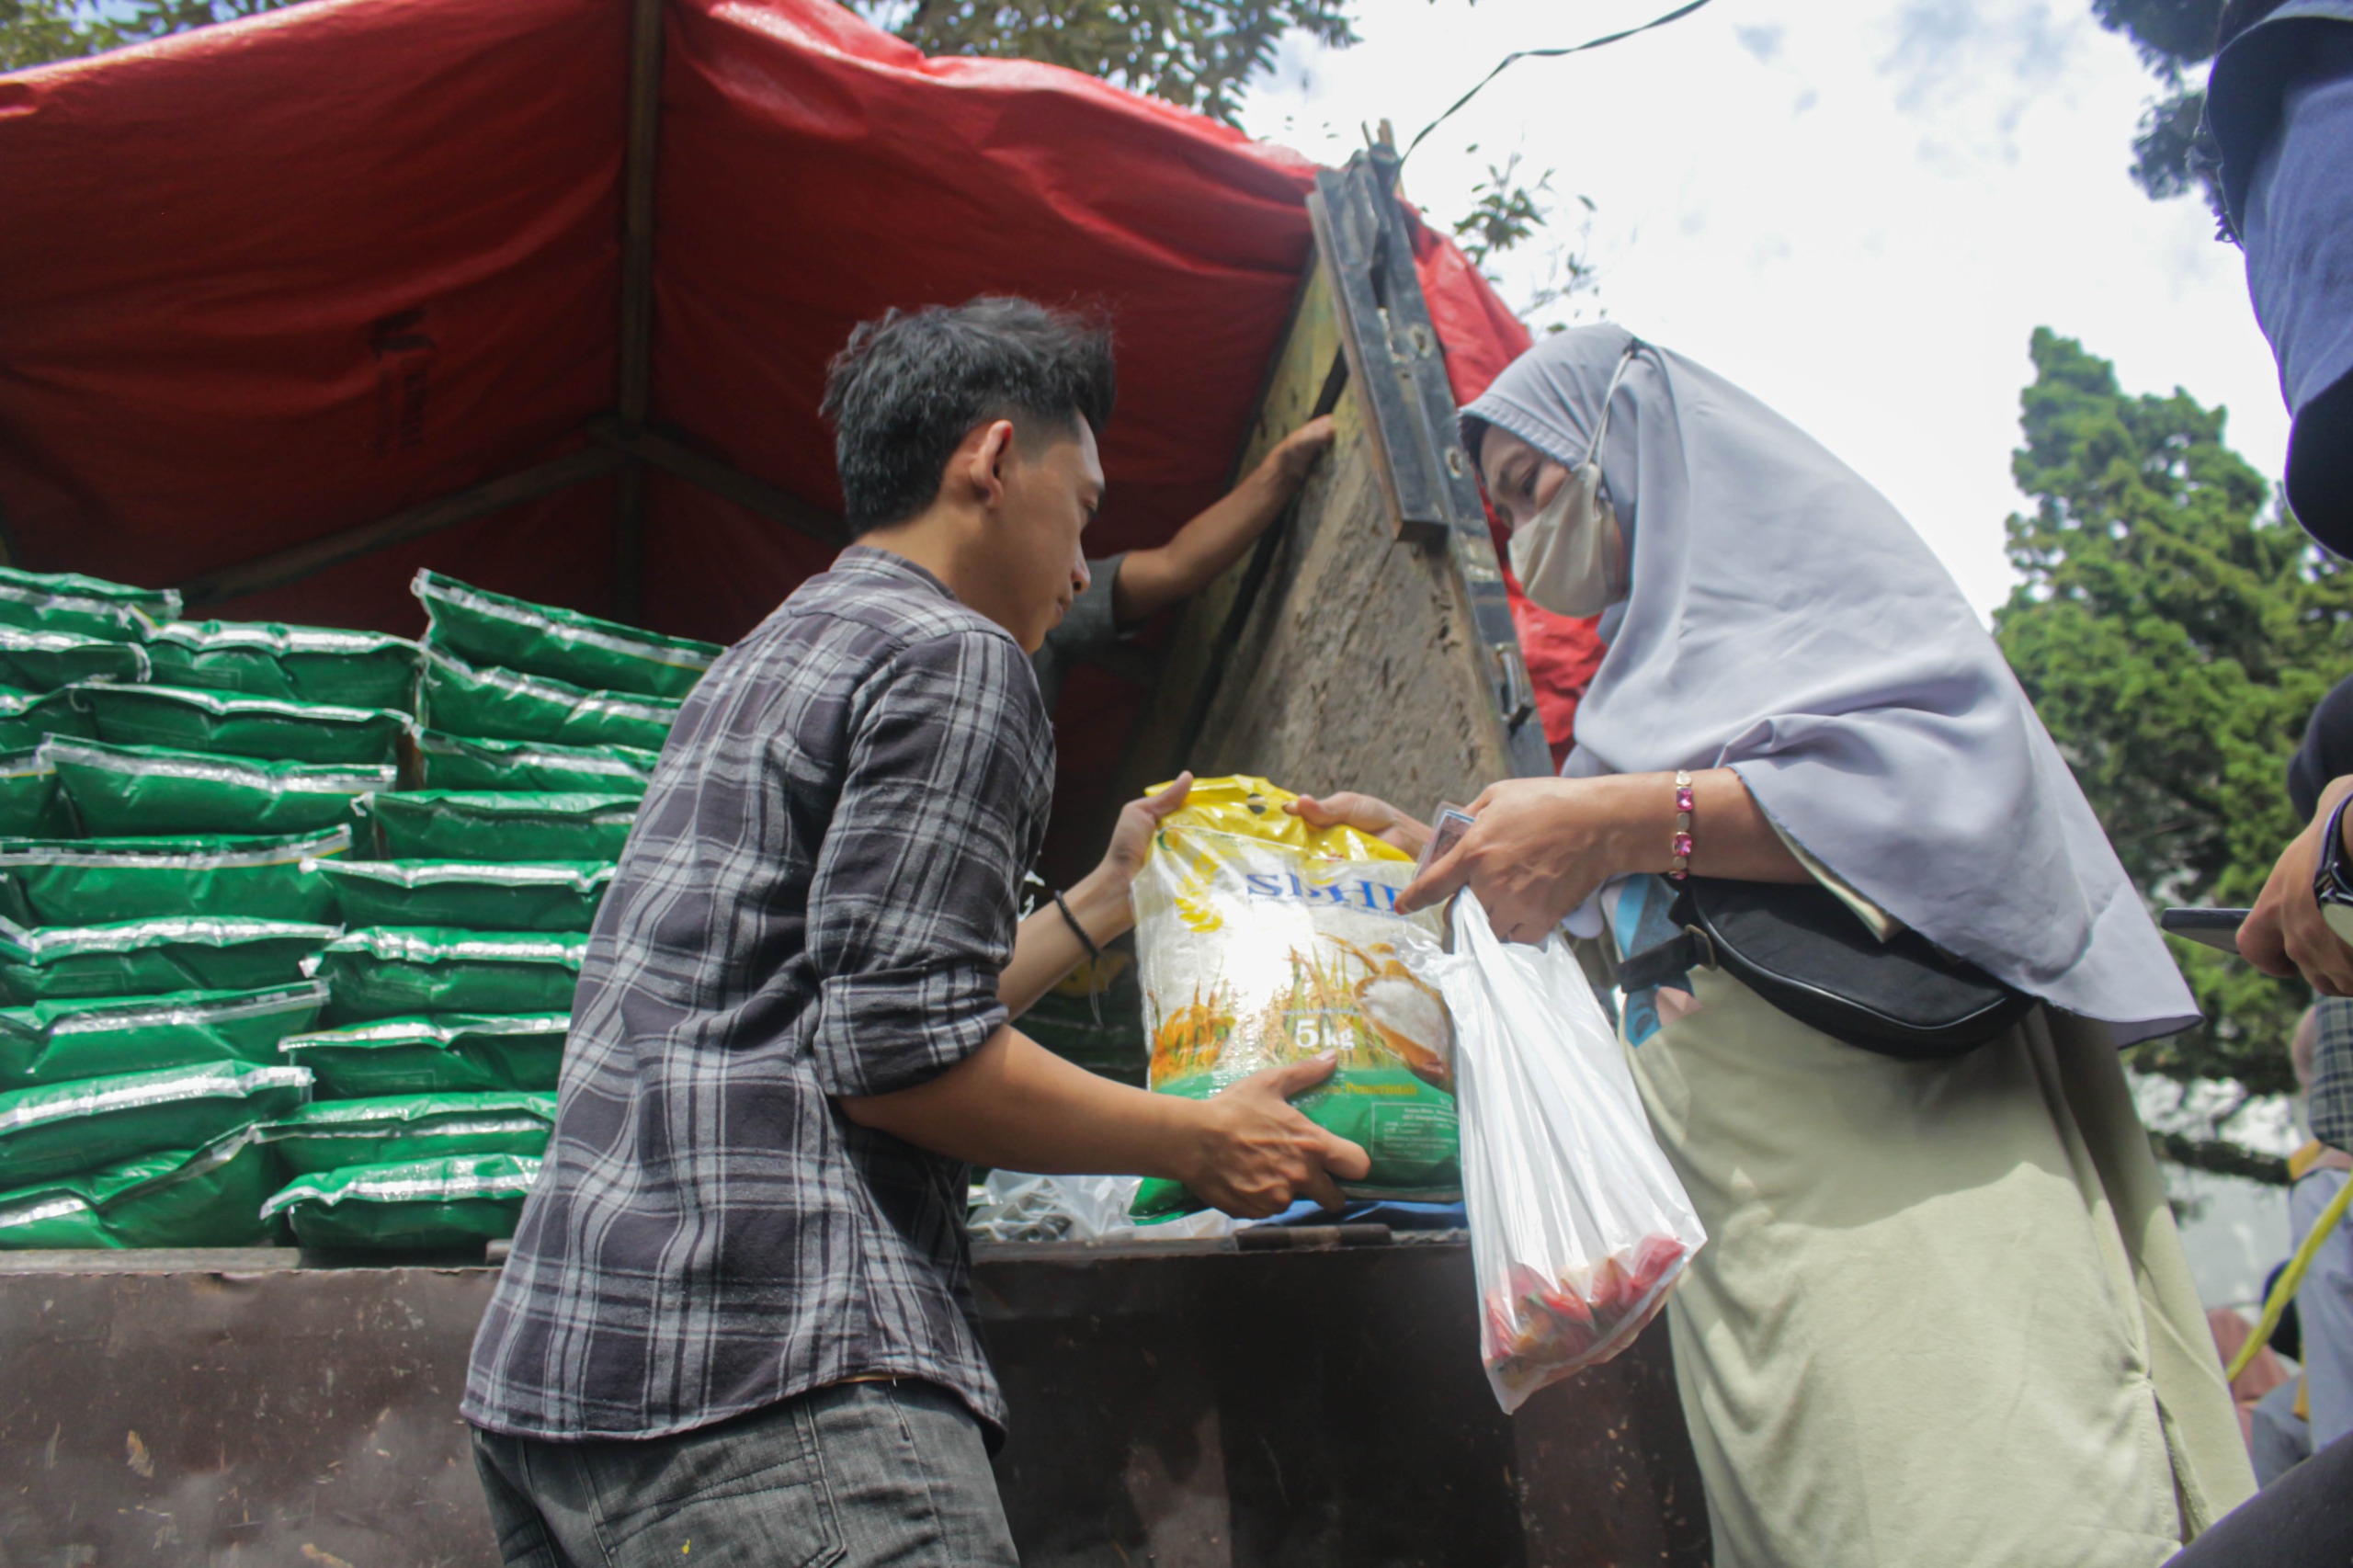 Masyarakat membeli beras SPHP saat Operasi Pasar Beras Medium SPHP dan Pasar Murah di halaman Kantor Kecamatan Cibiru, Kota Bandung. (Pandu Muslim/Jabar Ekspres)